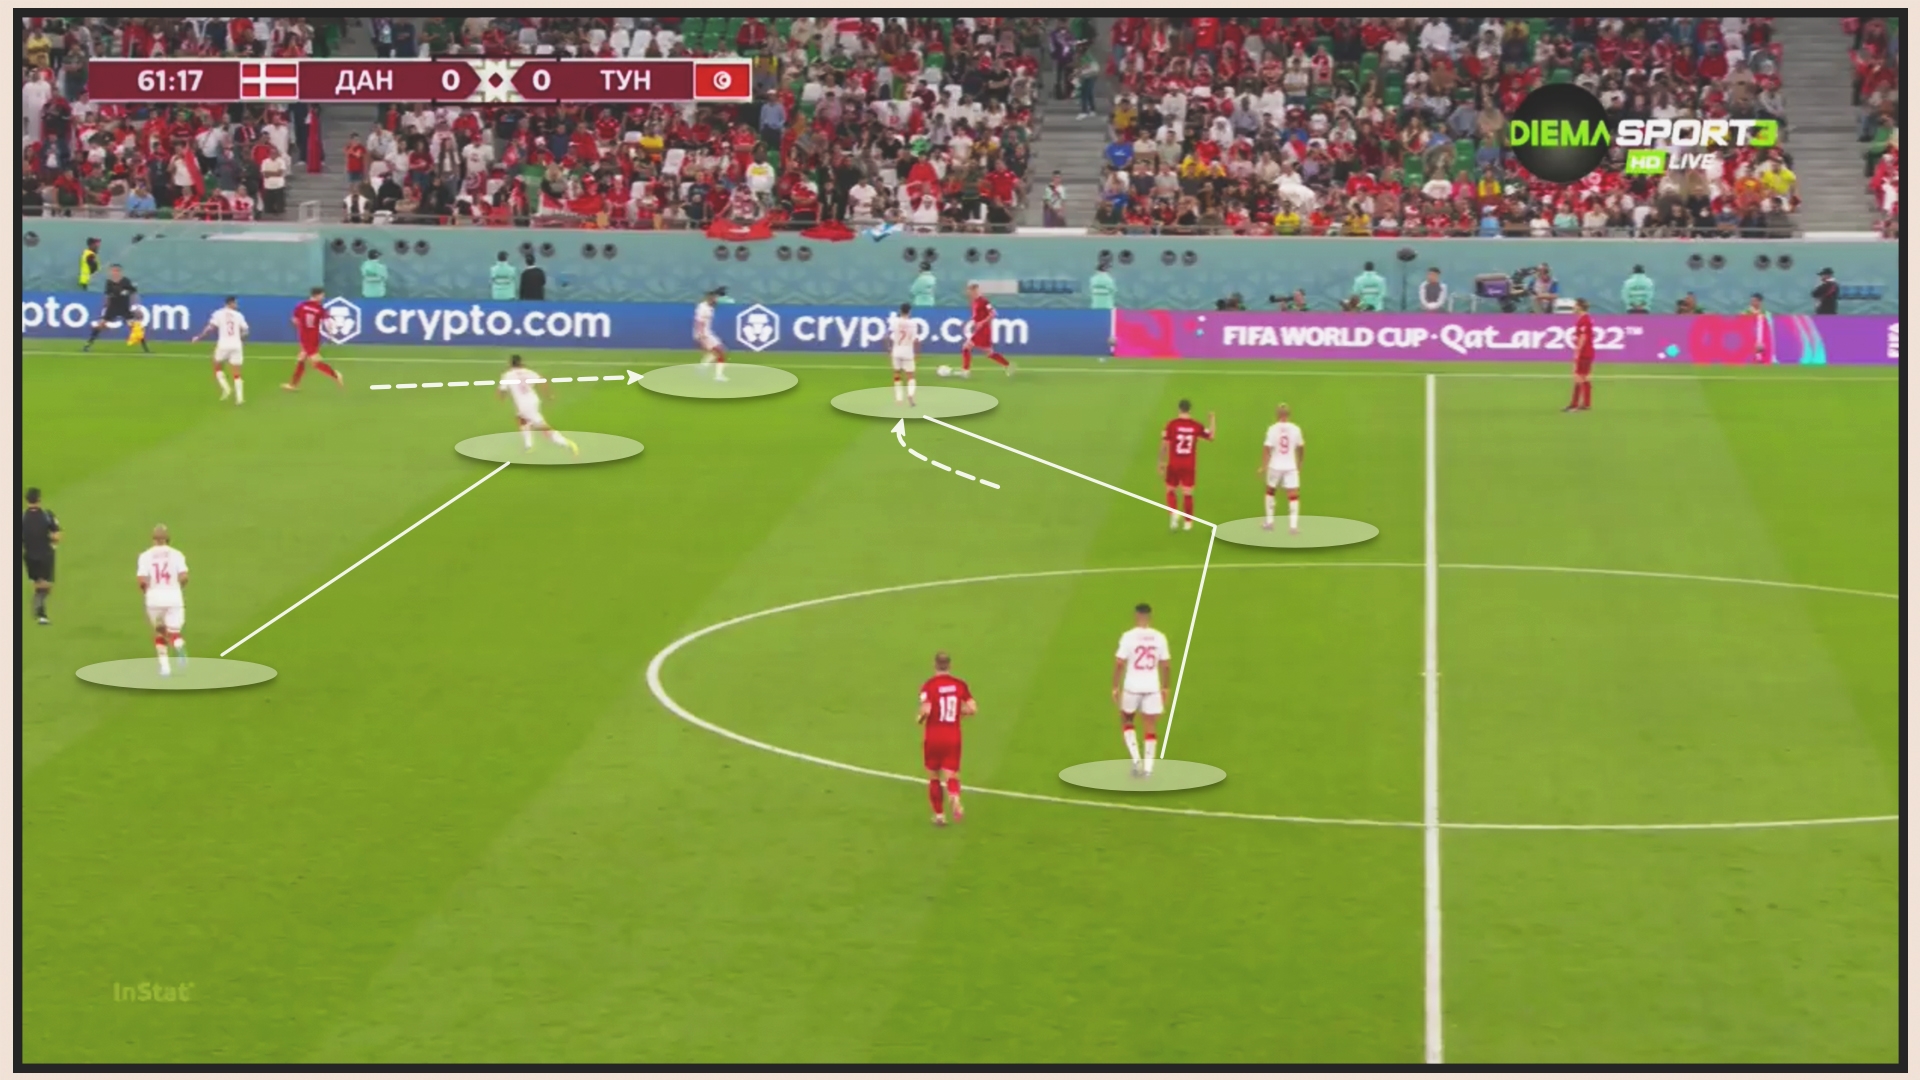 Đan Mạch 0-0 Tunisia Đan Mạch bị hoá giải 3